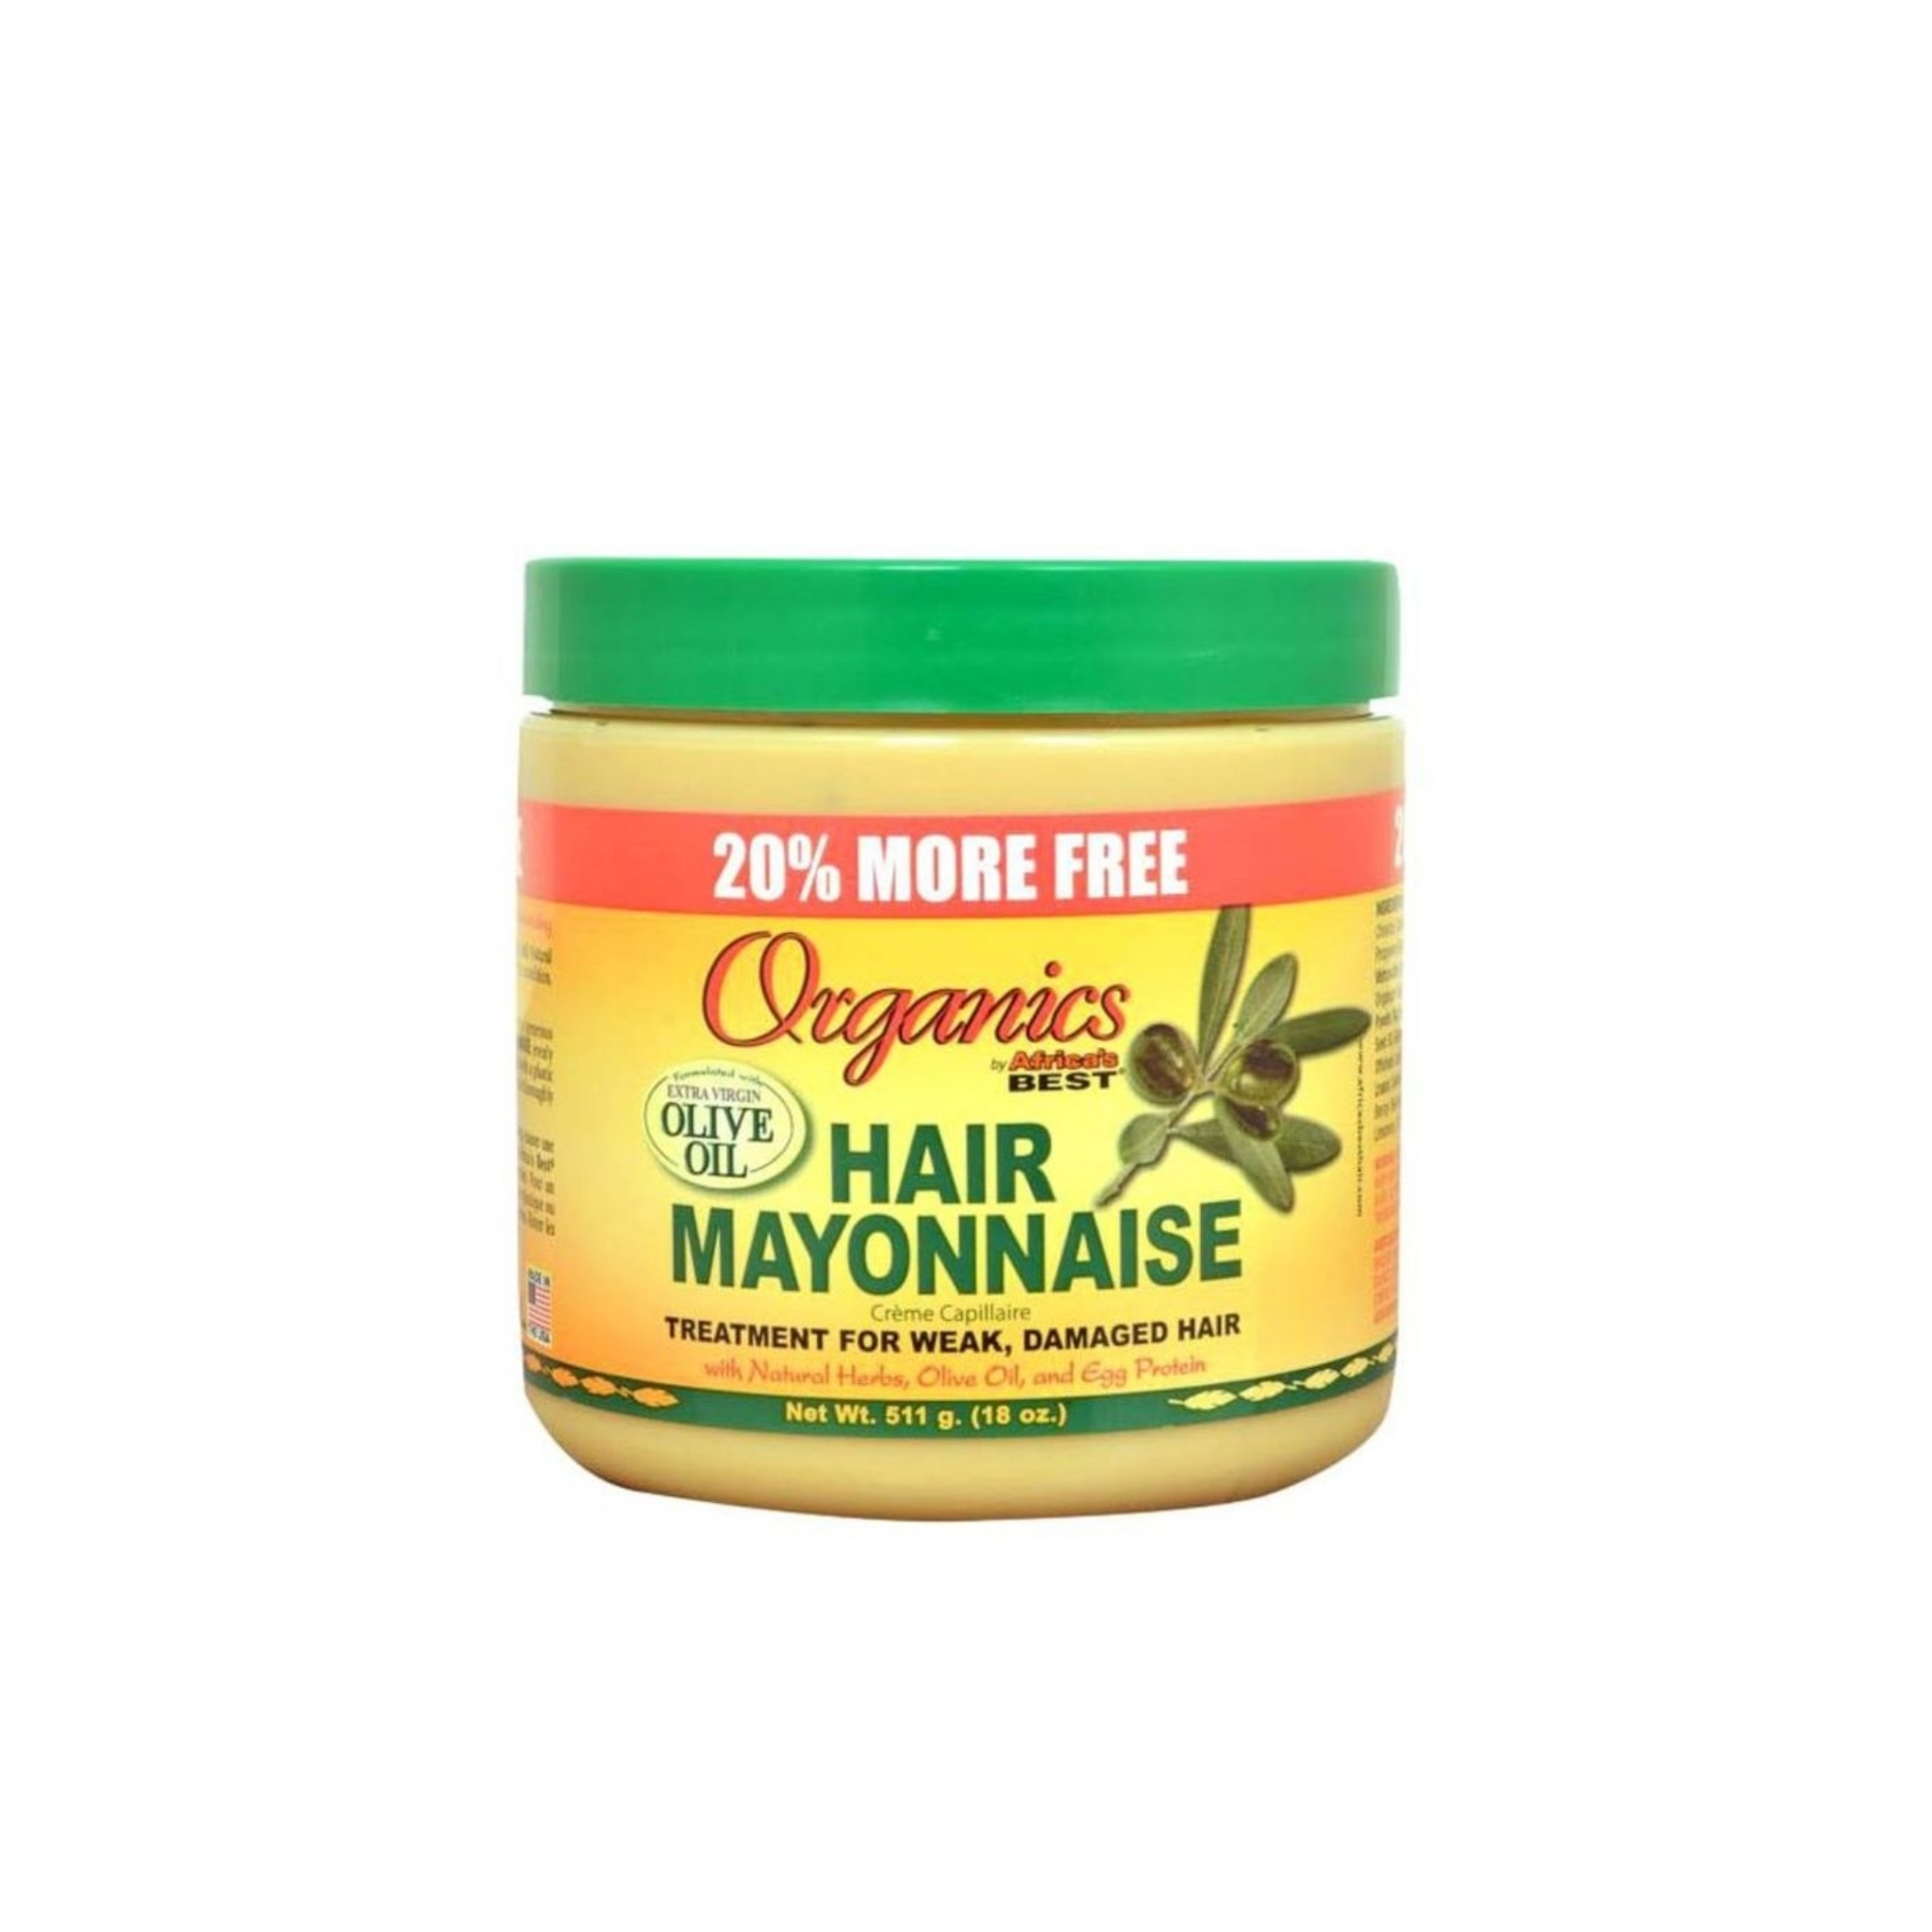 Organics Hair Mayonnaise Mask 511 g - Protecting hair from damage and loss  - يوشوب Ushop